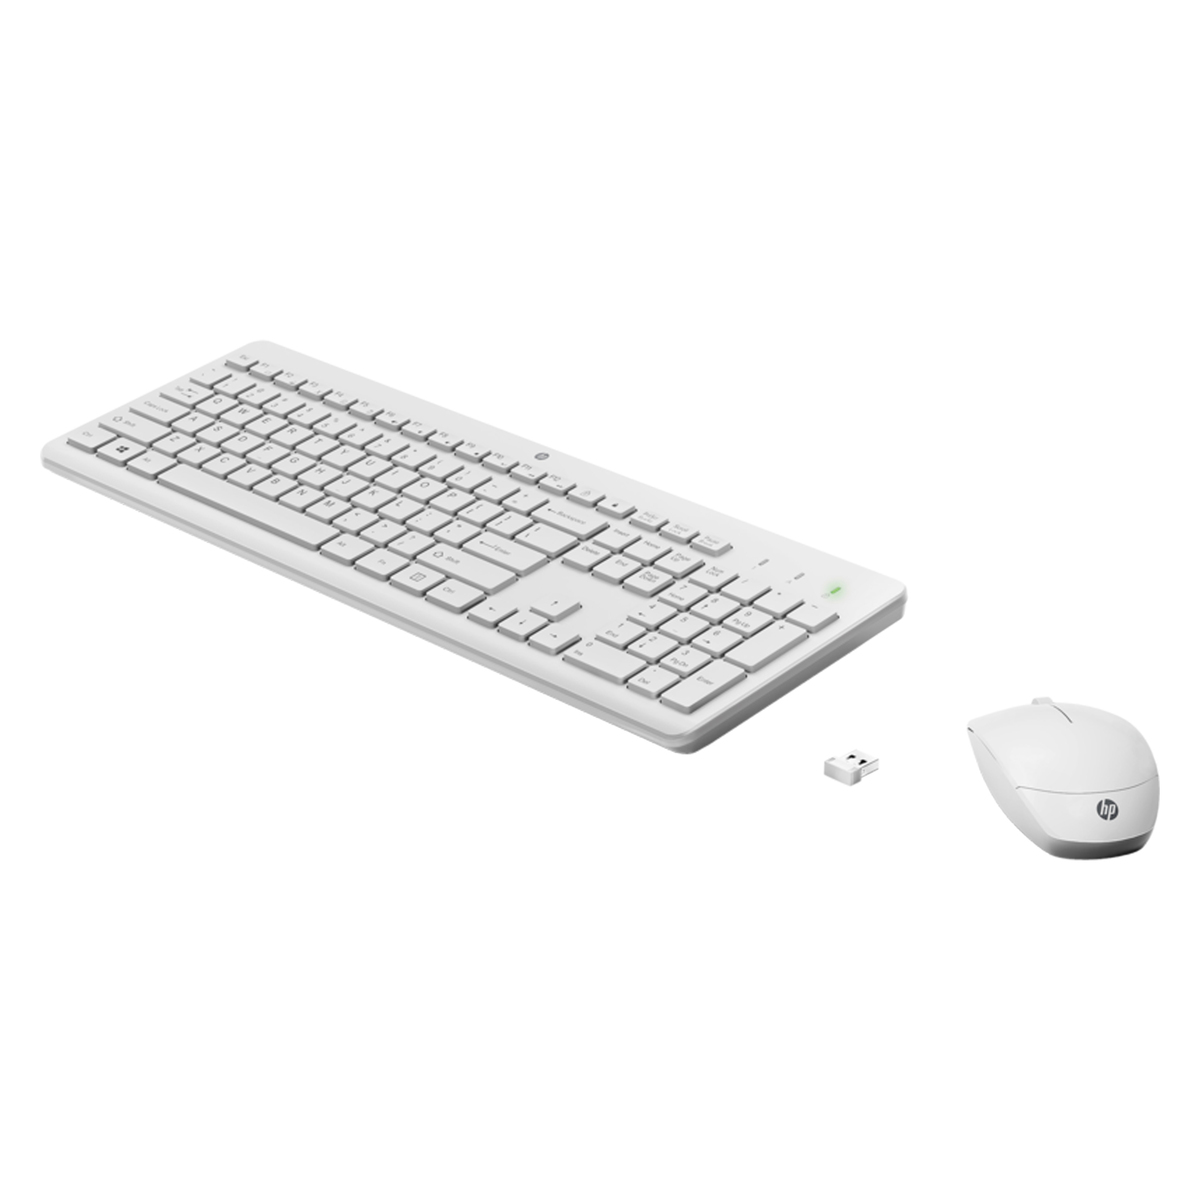 إتش بي 230 مجموعة لوحة مفاتيح وفأرة لاسلكية 1600 نقطة لكل بوصة باللون الأبيض